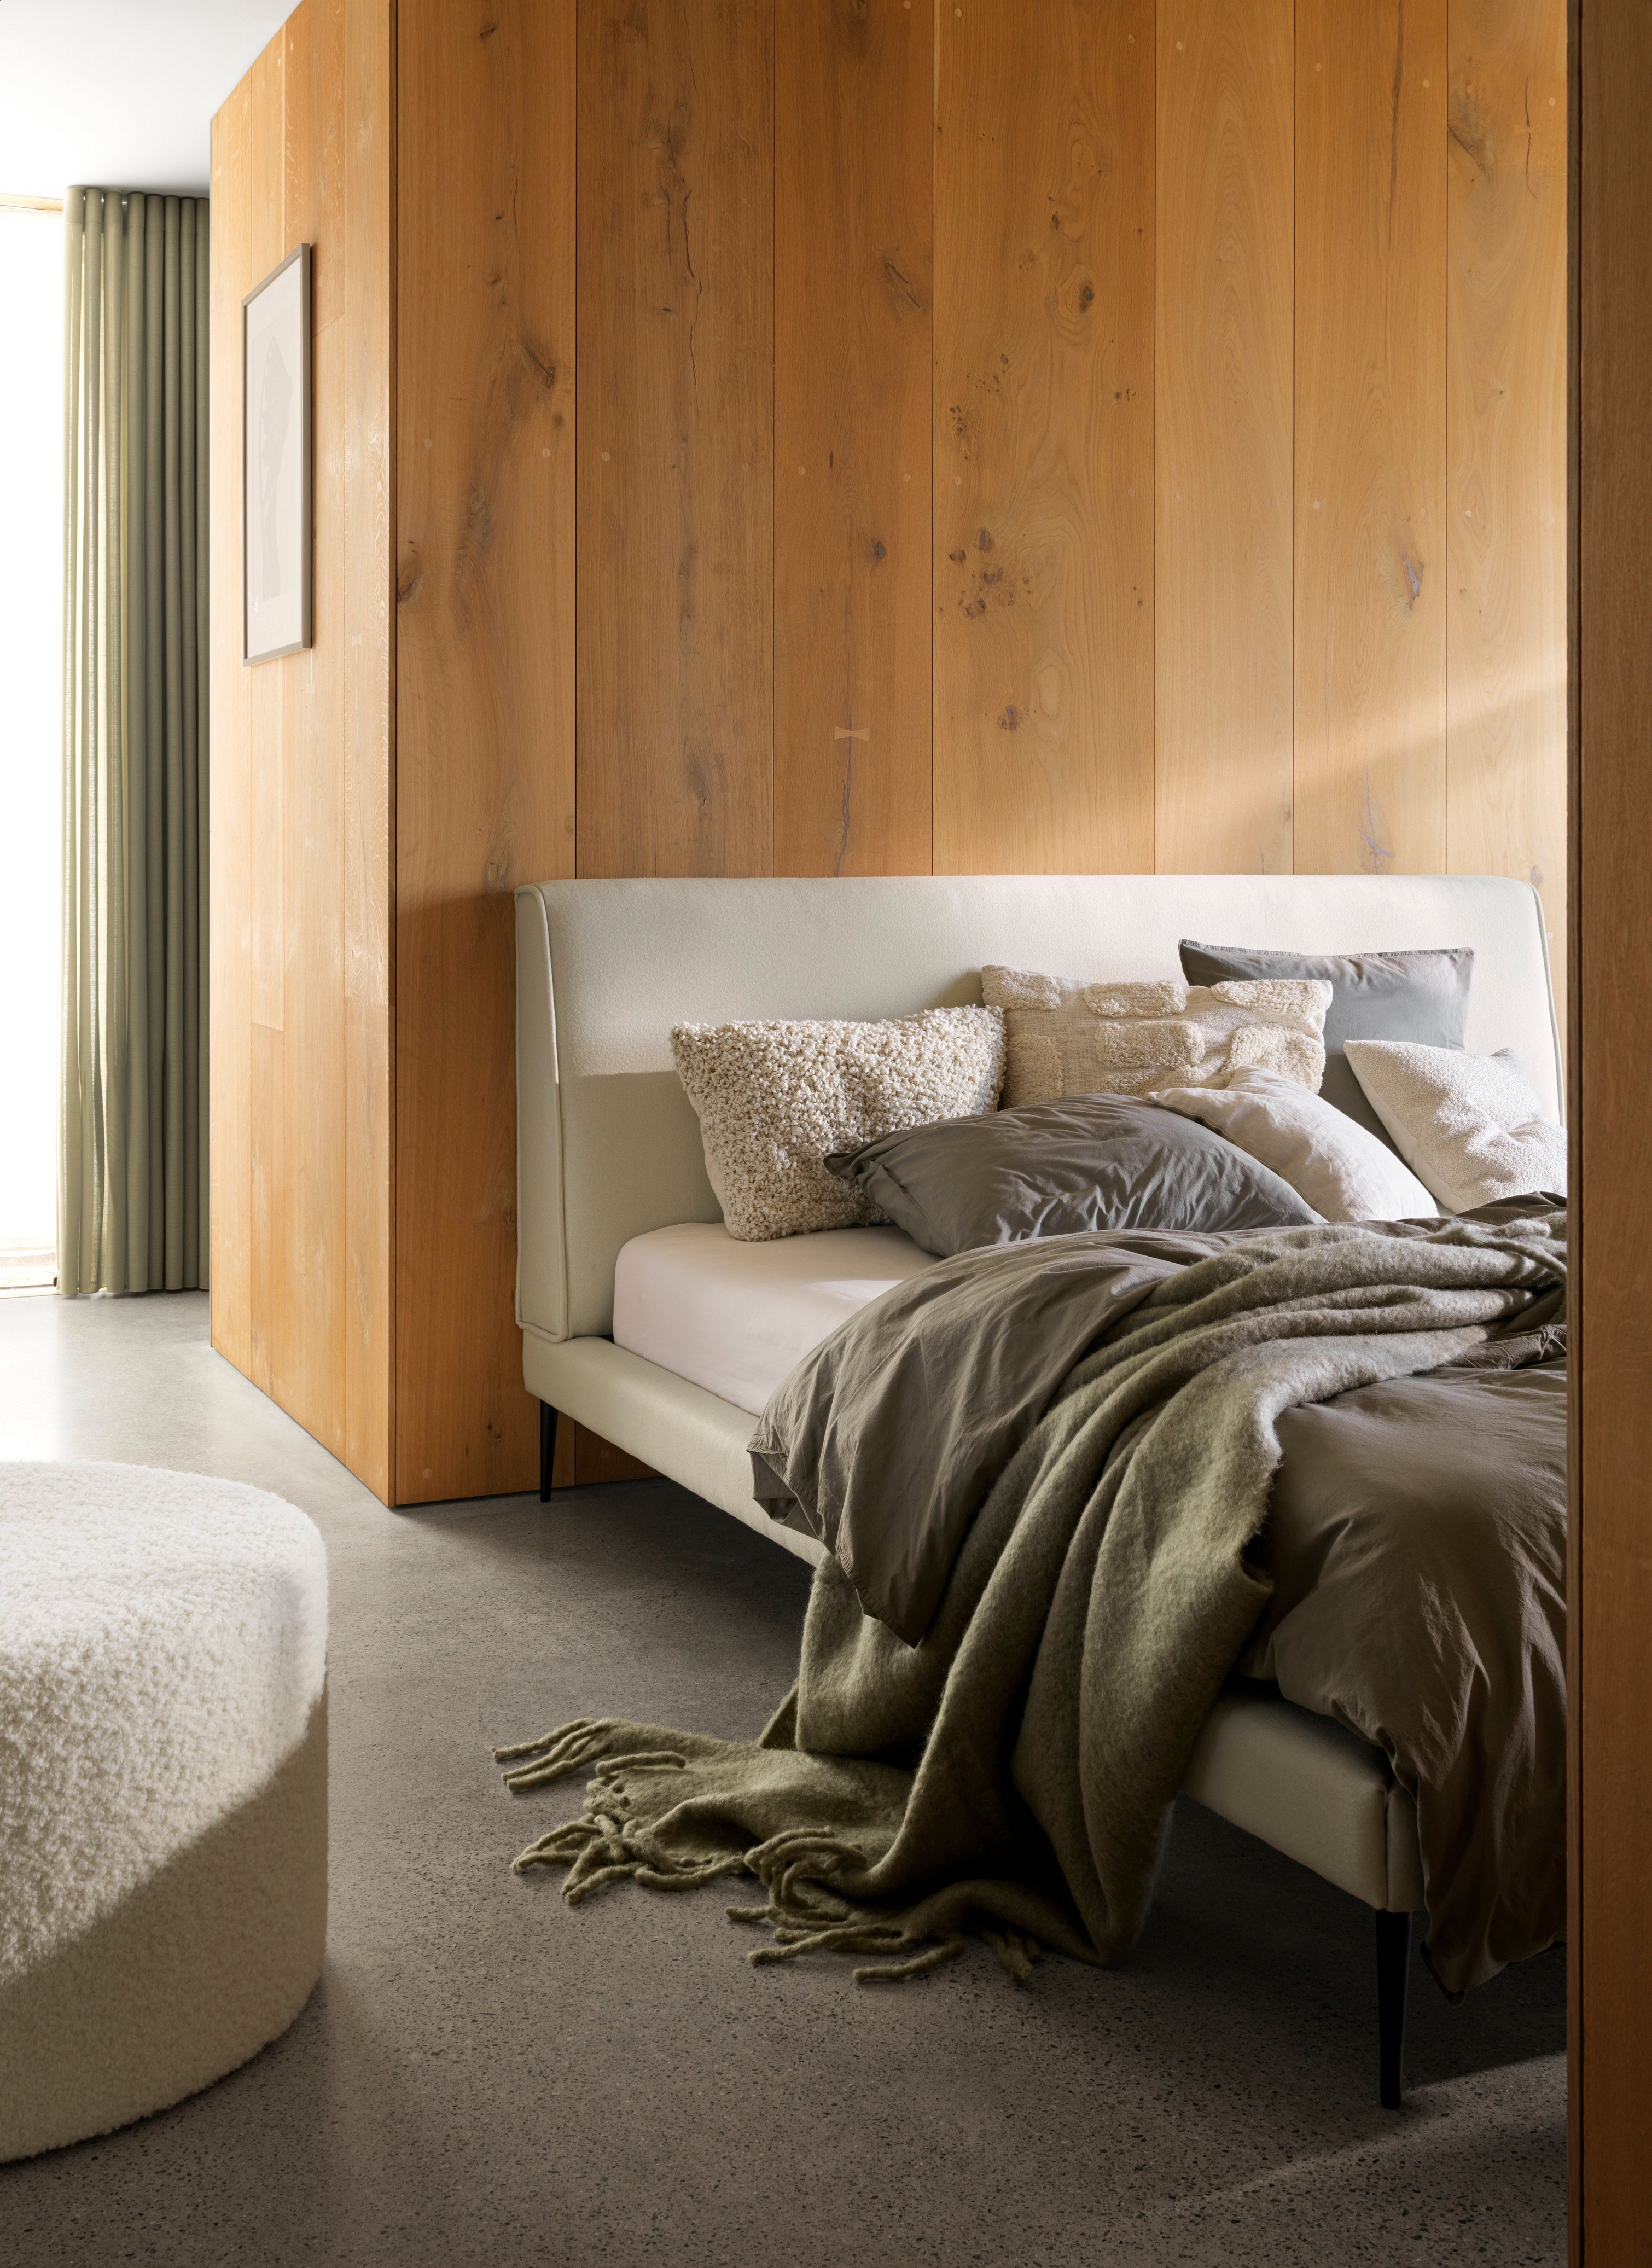 Cama acogedora con mantas y cojines de peluche junto a una pared de madera e iluminación suave.